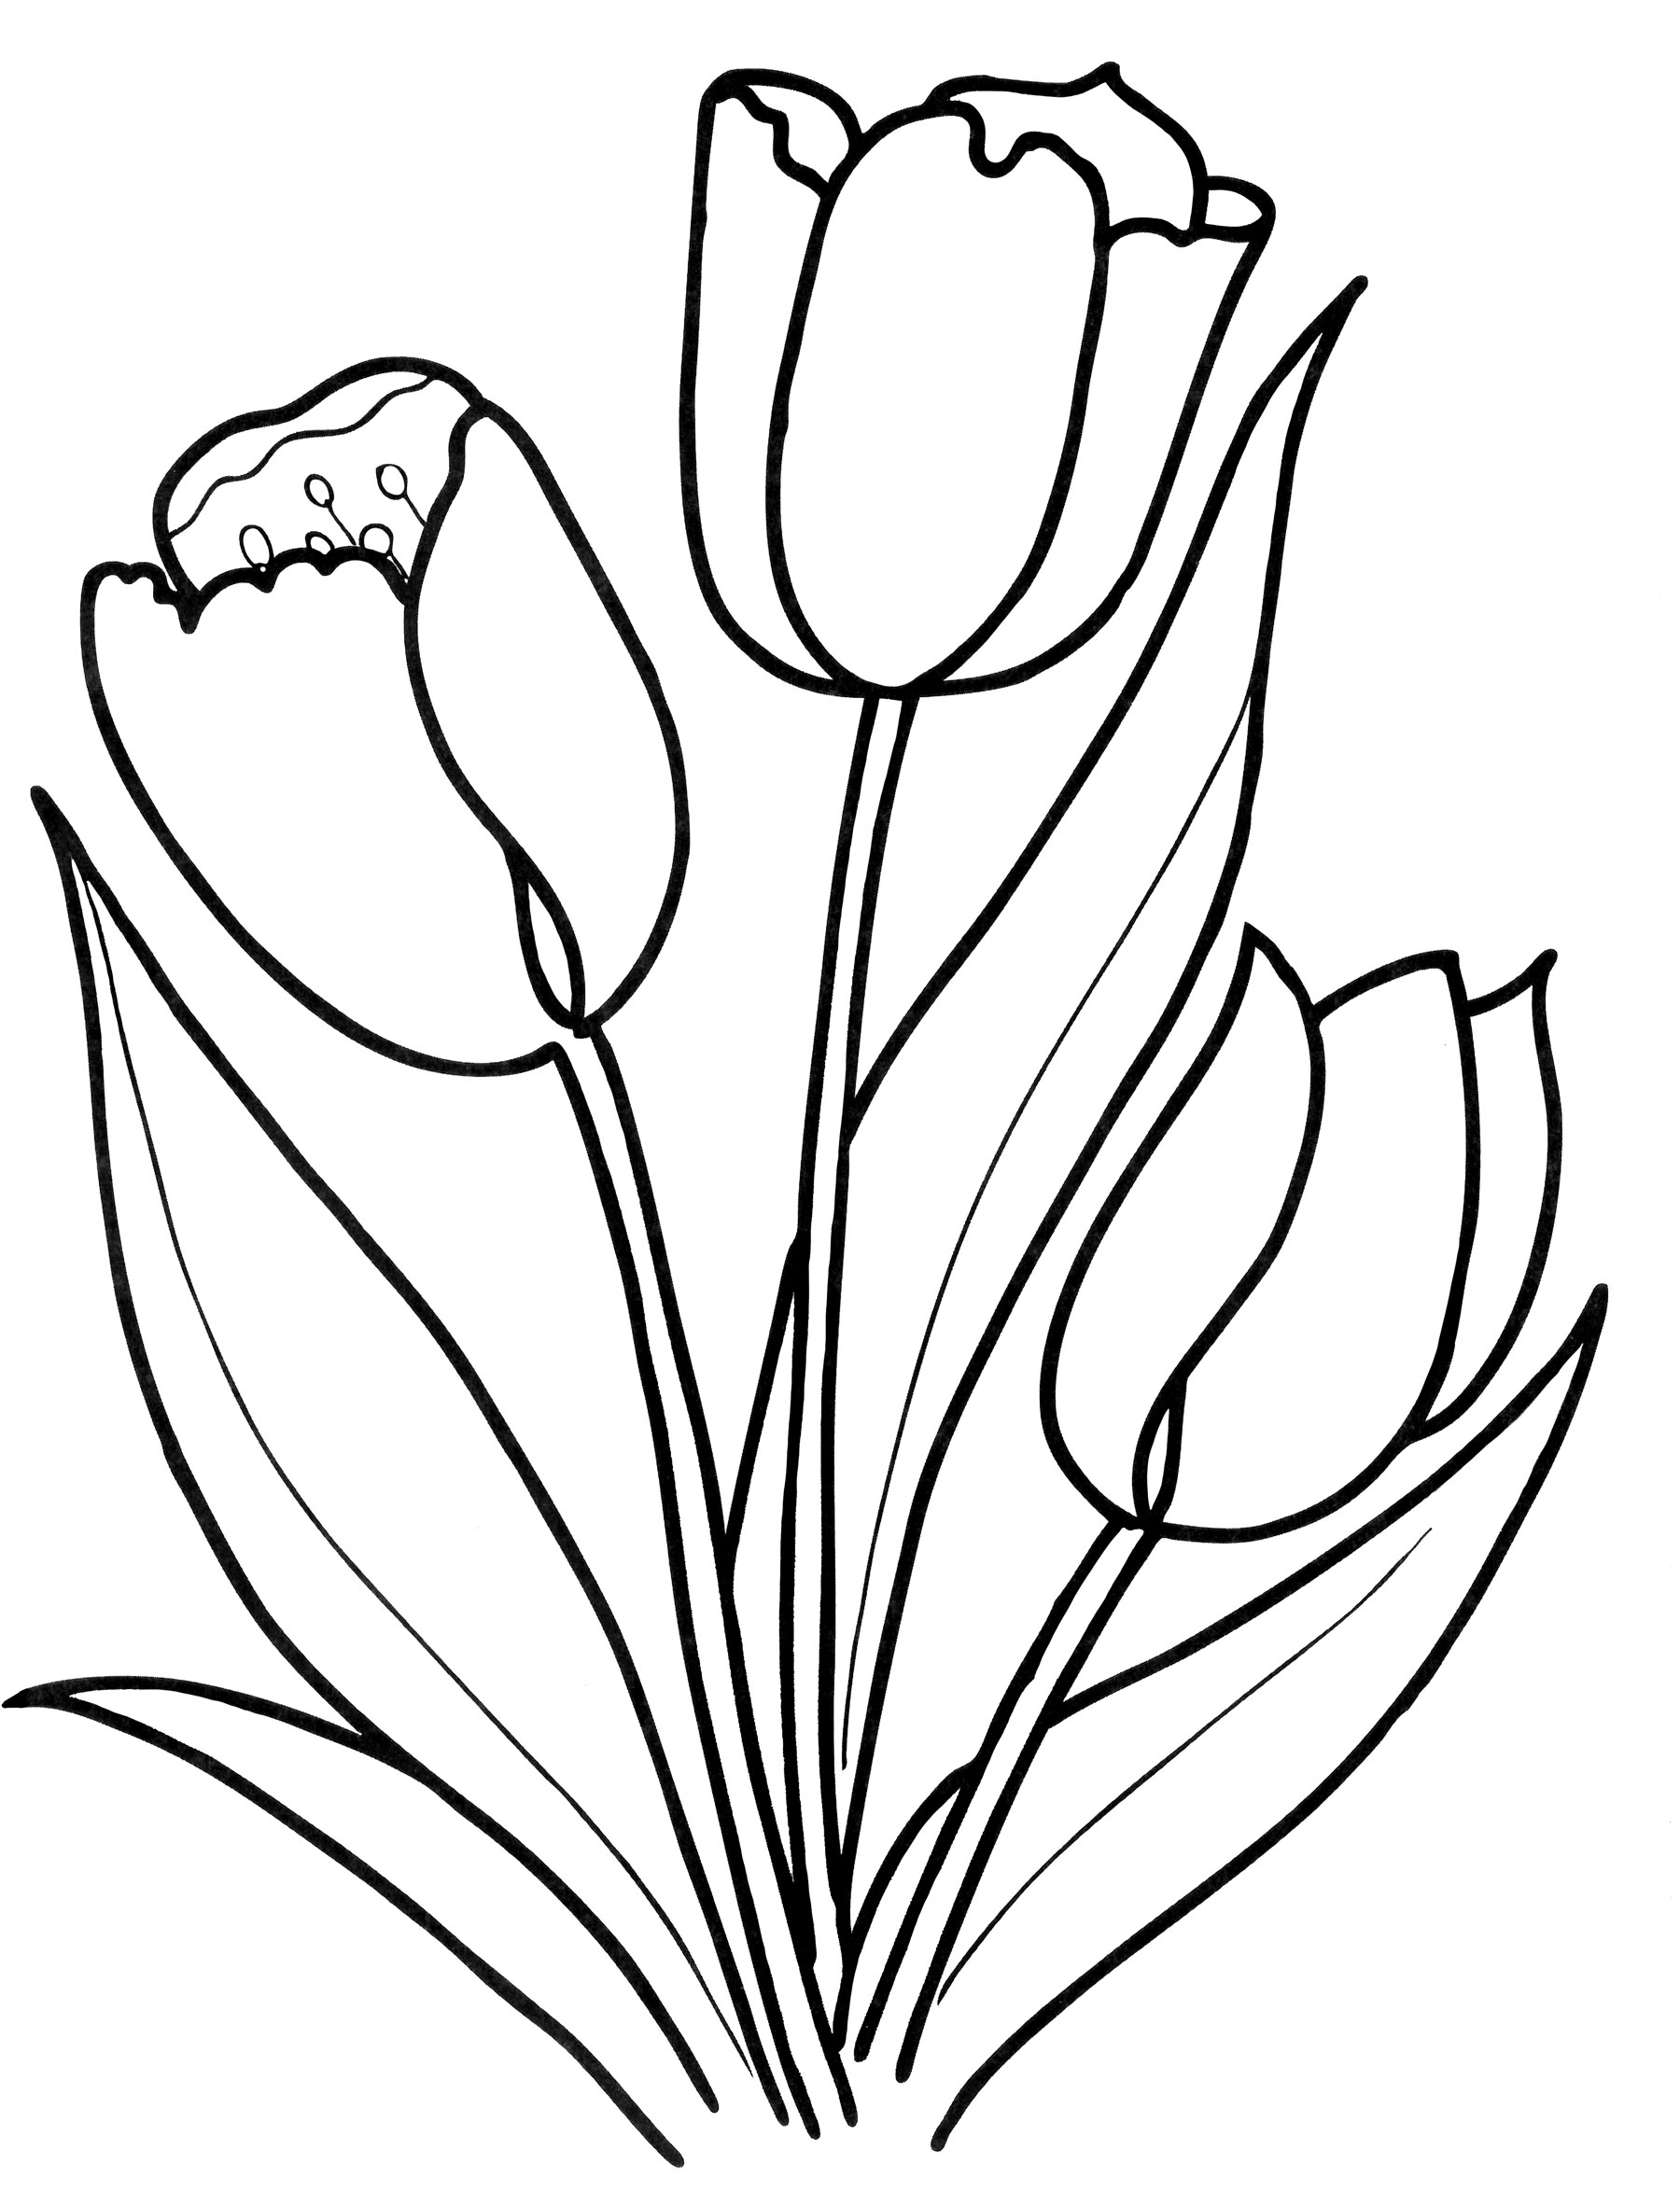 Распечатать цветок тюльпан для вырезания. Контур букета тюльпанов сбоку. Тюльпан Шренка раскраска. Тюльпан Грейга раскраска. Раскраска цветы тюльпаны.